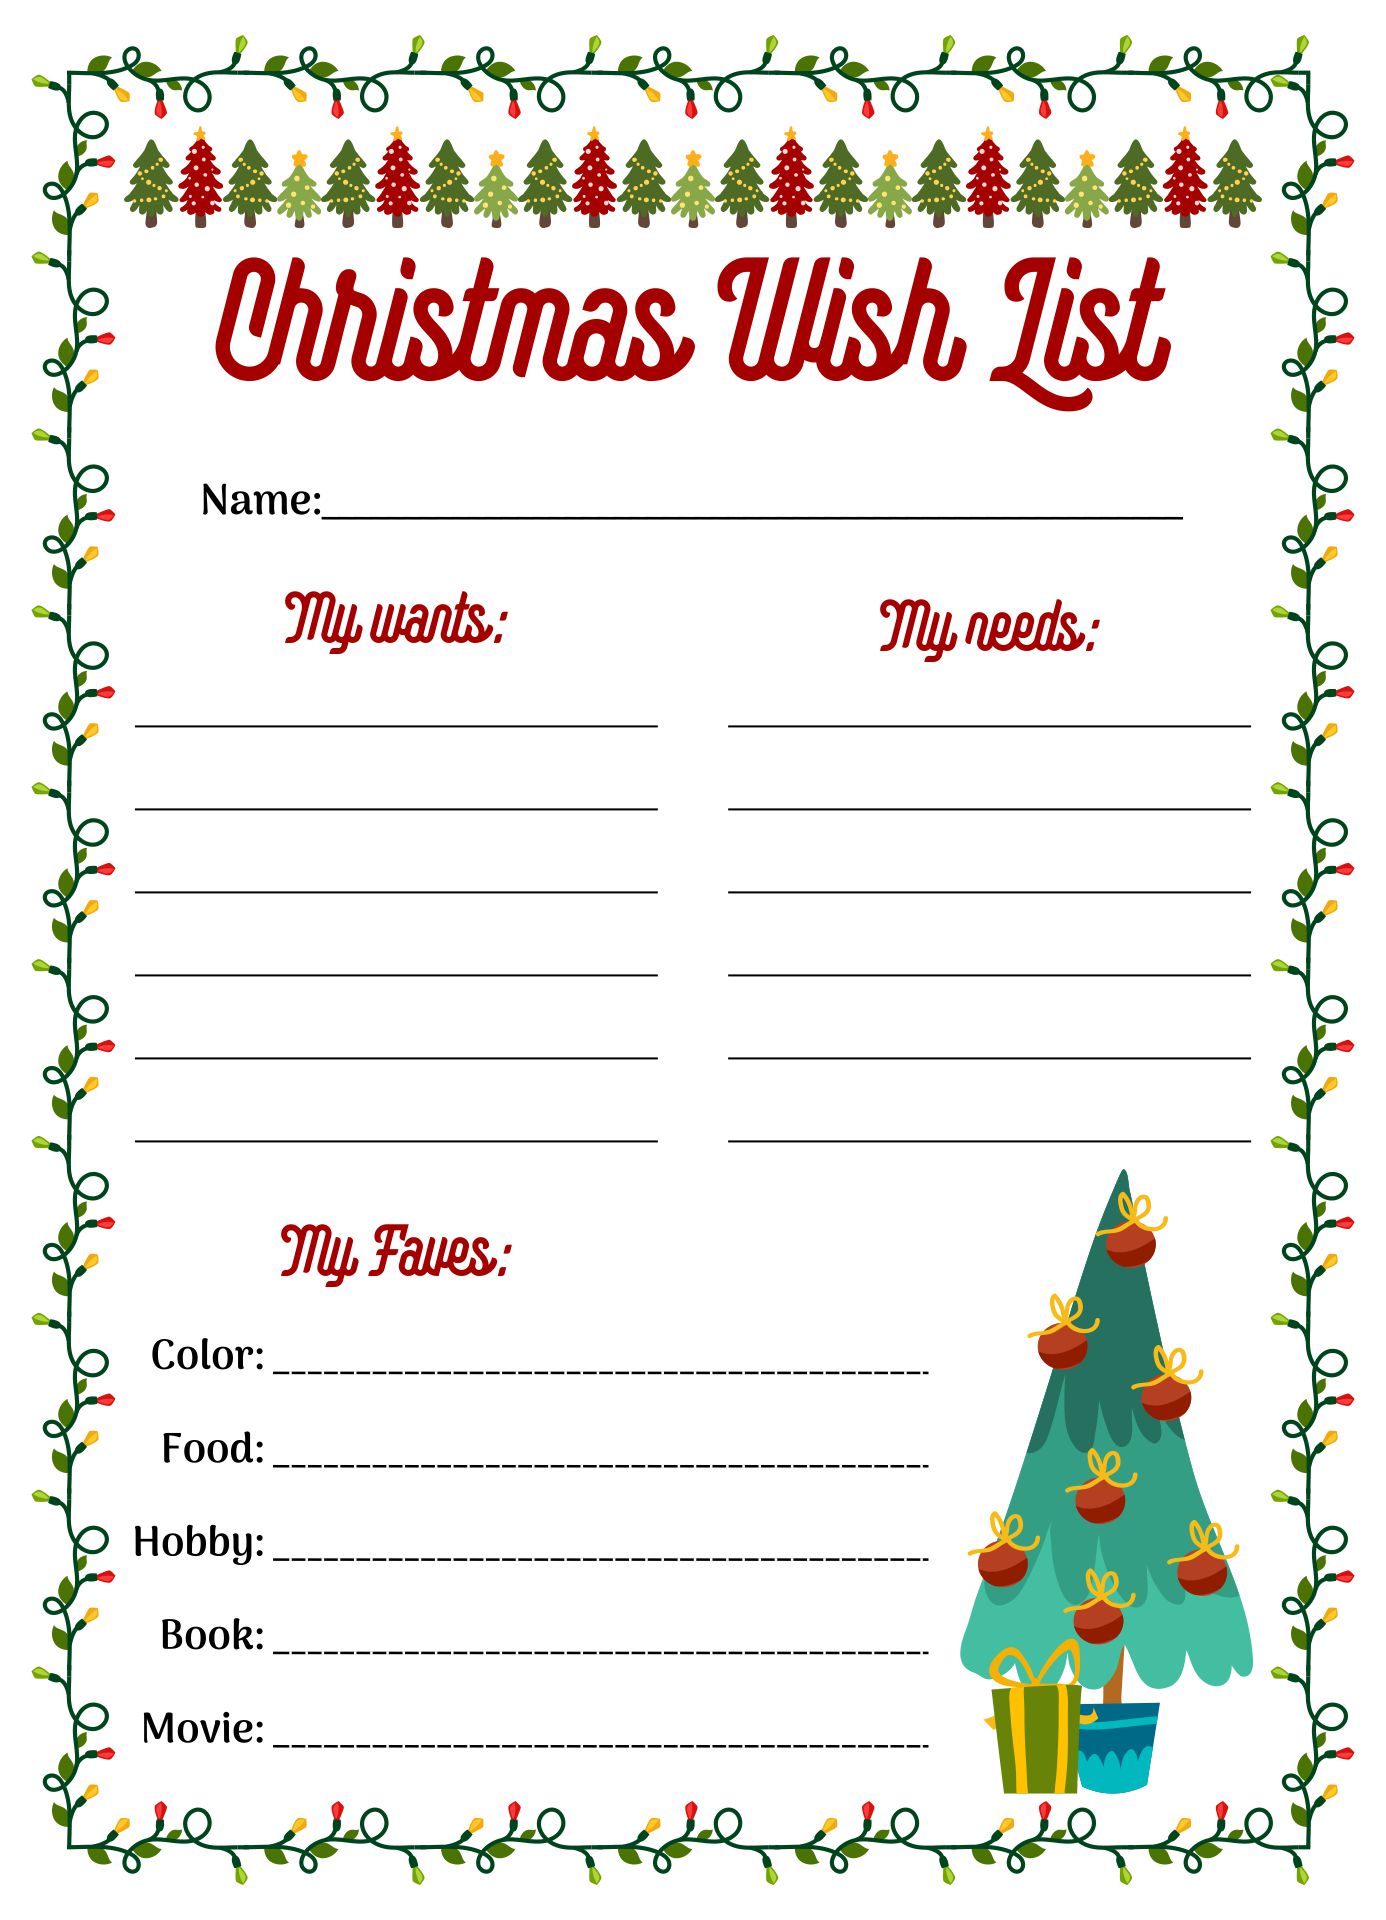 Printable Wish List Template For Christmas